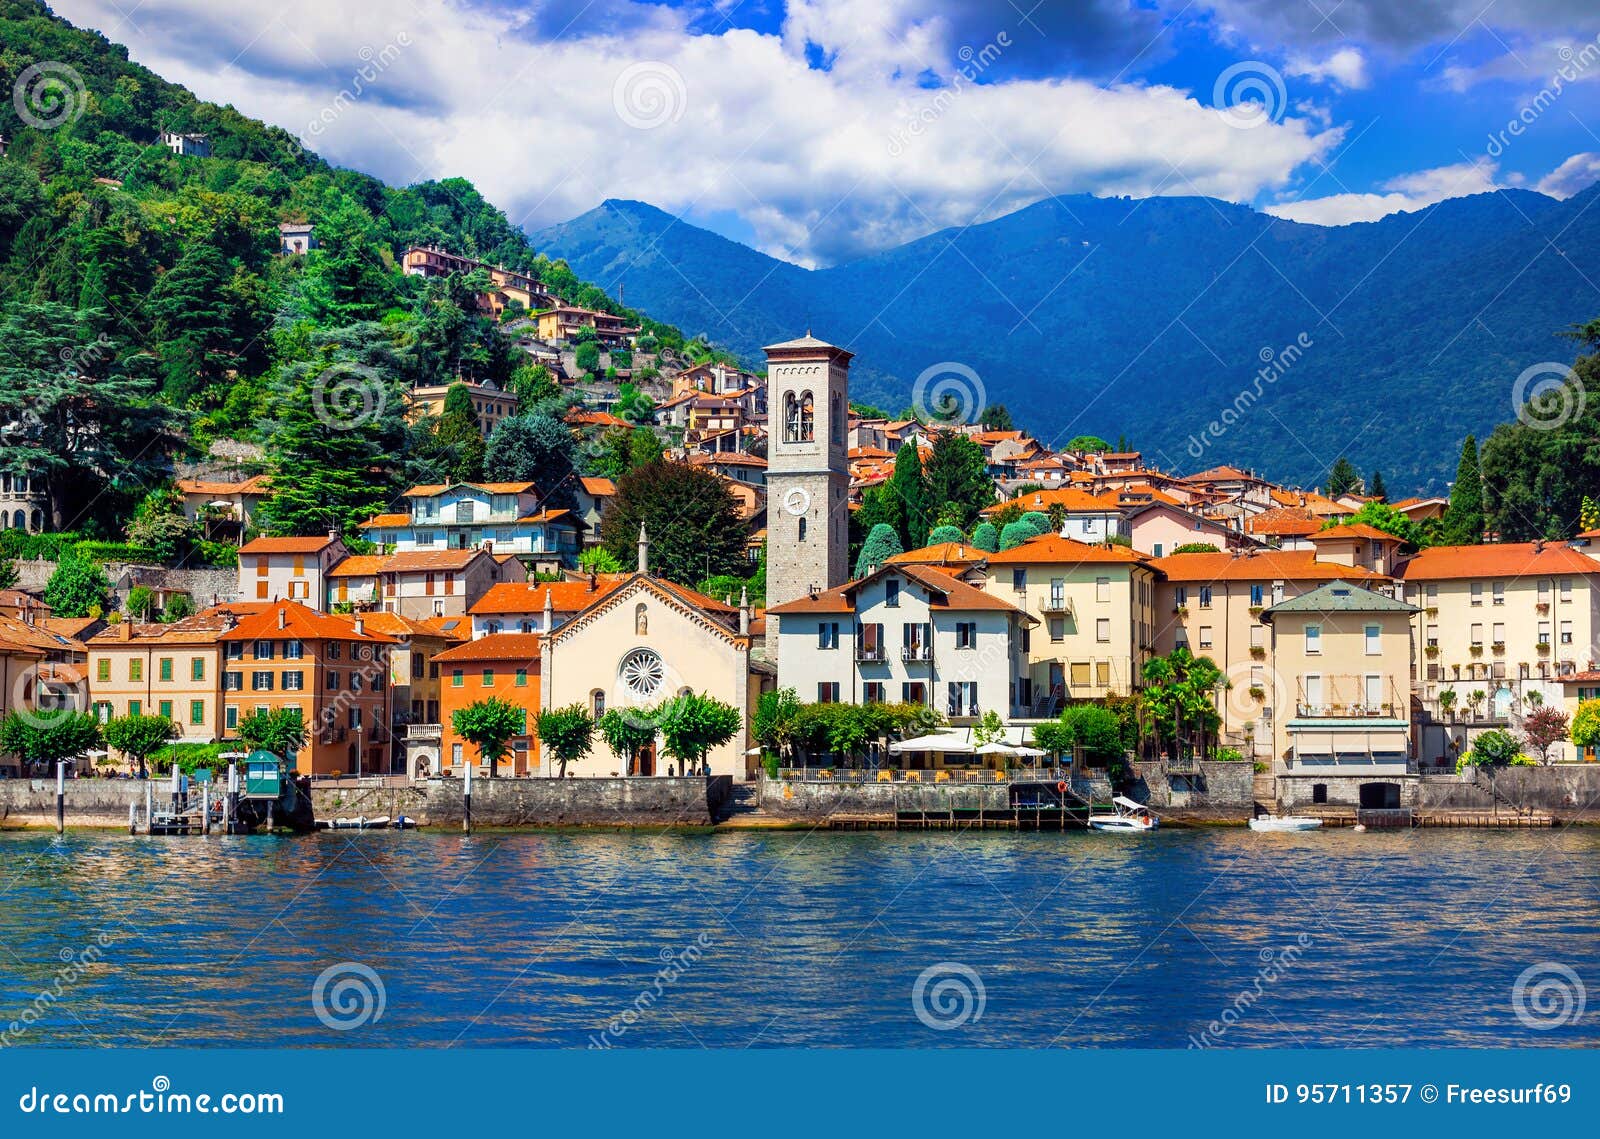 scenic village torno in beautiful lago di como, north of italy